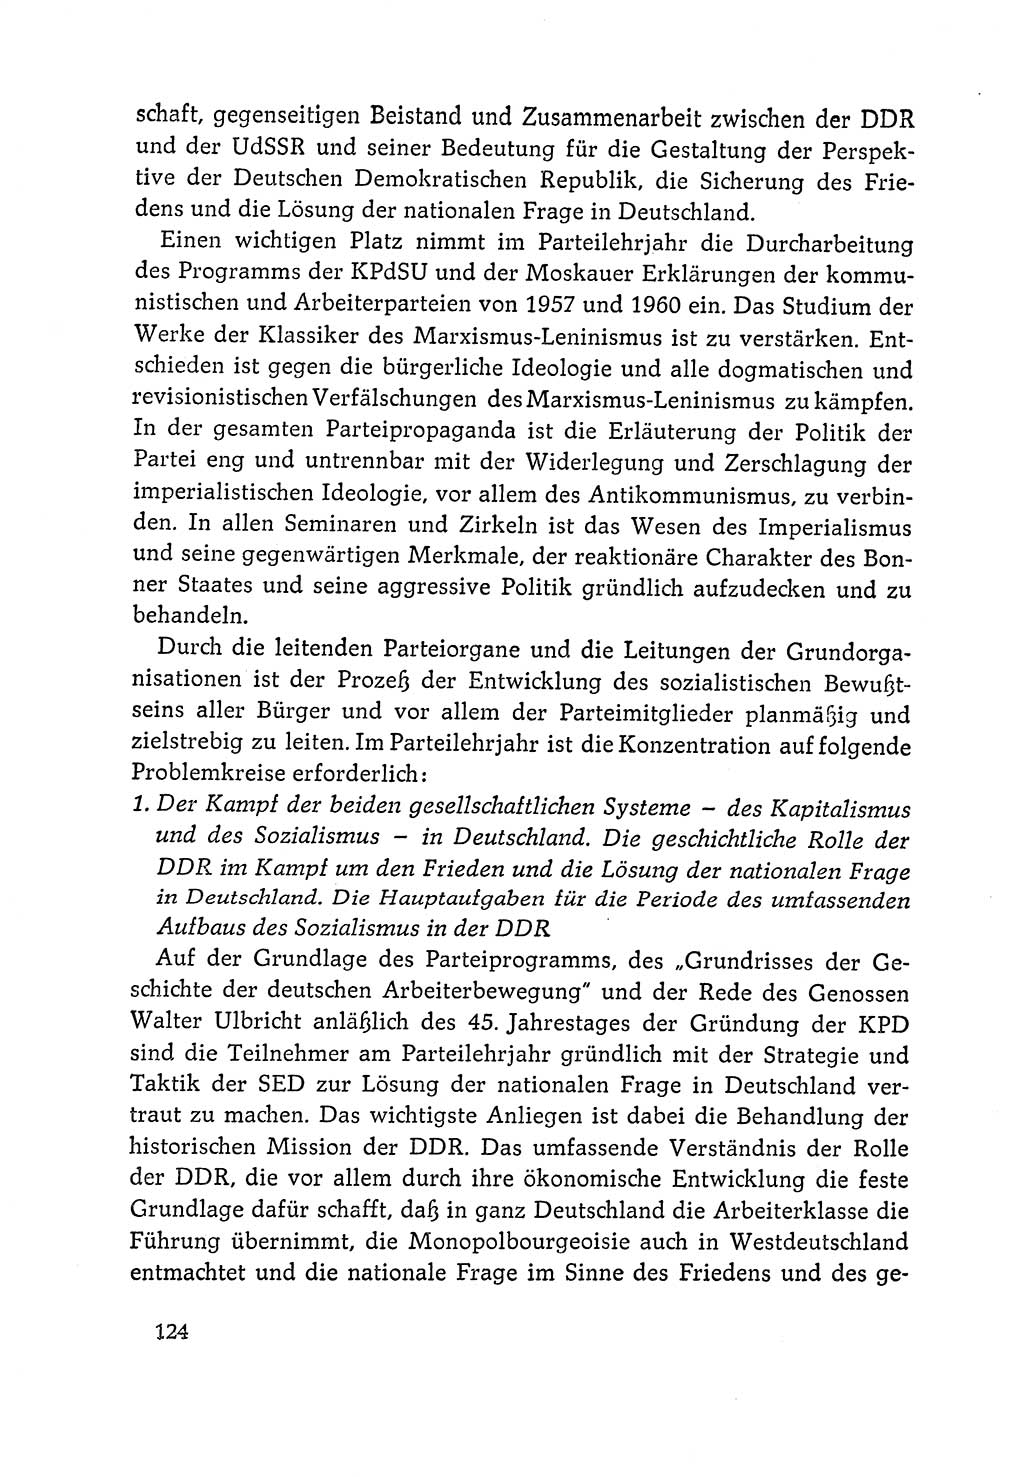 Dokumente der Sozialistischen Einheitspartei Deutschlands (SED) [Deutsche Demokratische Republik (DDR)] 1964-1965, Seite 124 (Dok. SED DDR 1964-1965, S. 124)